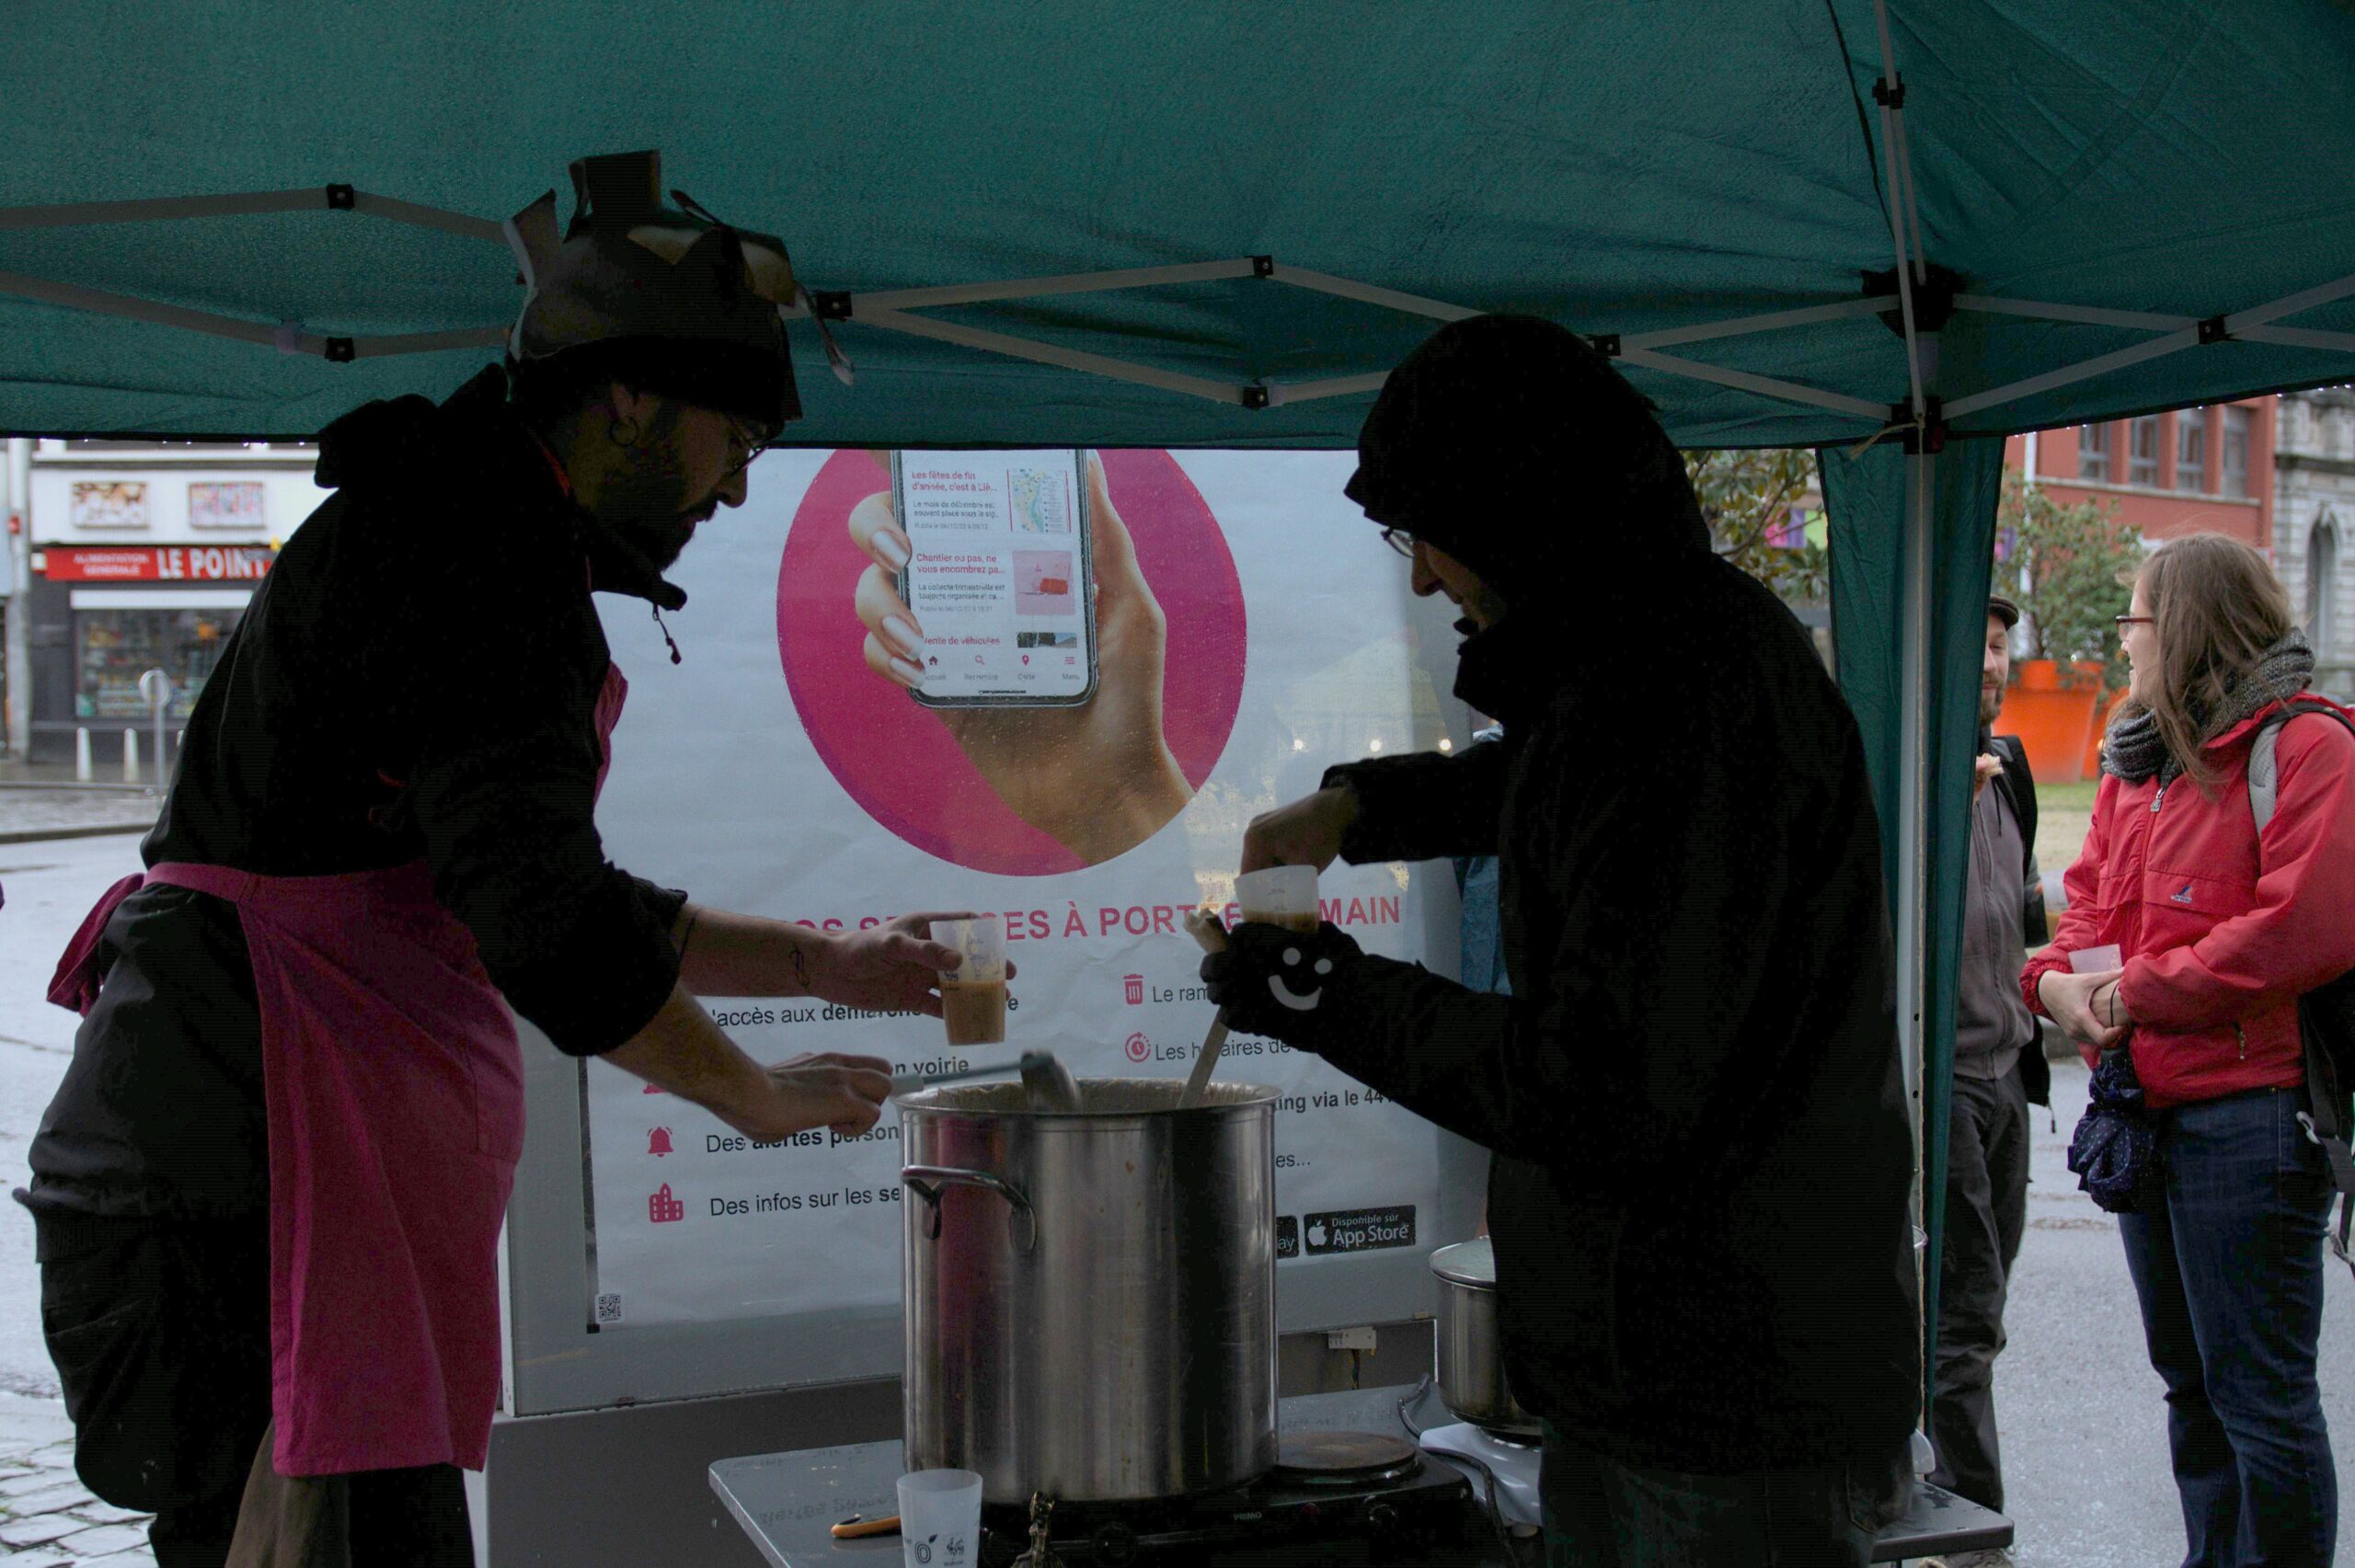 Des activistes offrent de la soupe grâce à l’électricité d’un panneau publicitaire